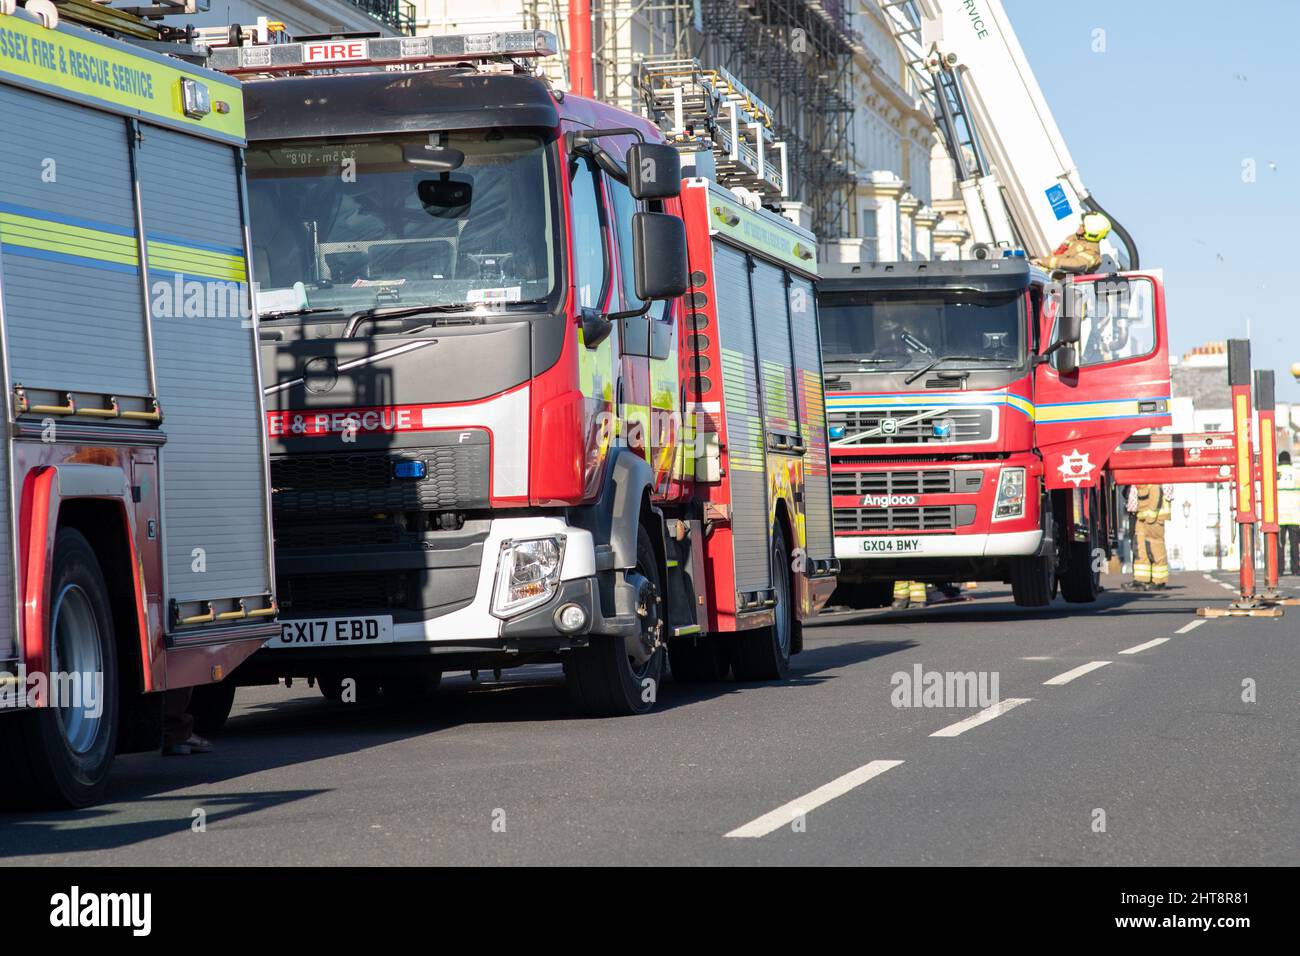 Eastbourne, Reino Unido, 27th de febrero de 2022. El servicio de bomberos de East Sussex y la policía fueron llamados al hotel Cavendish en Eastbourne después de los informes de olor a quemado. Foto de stock